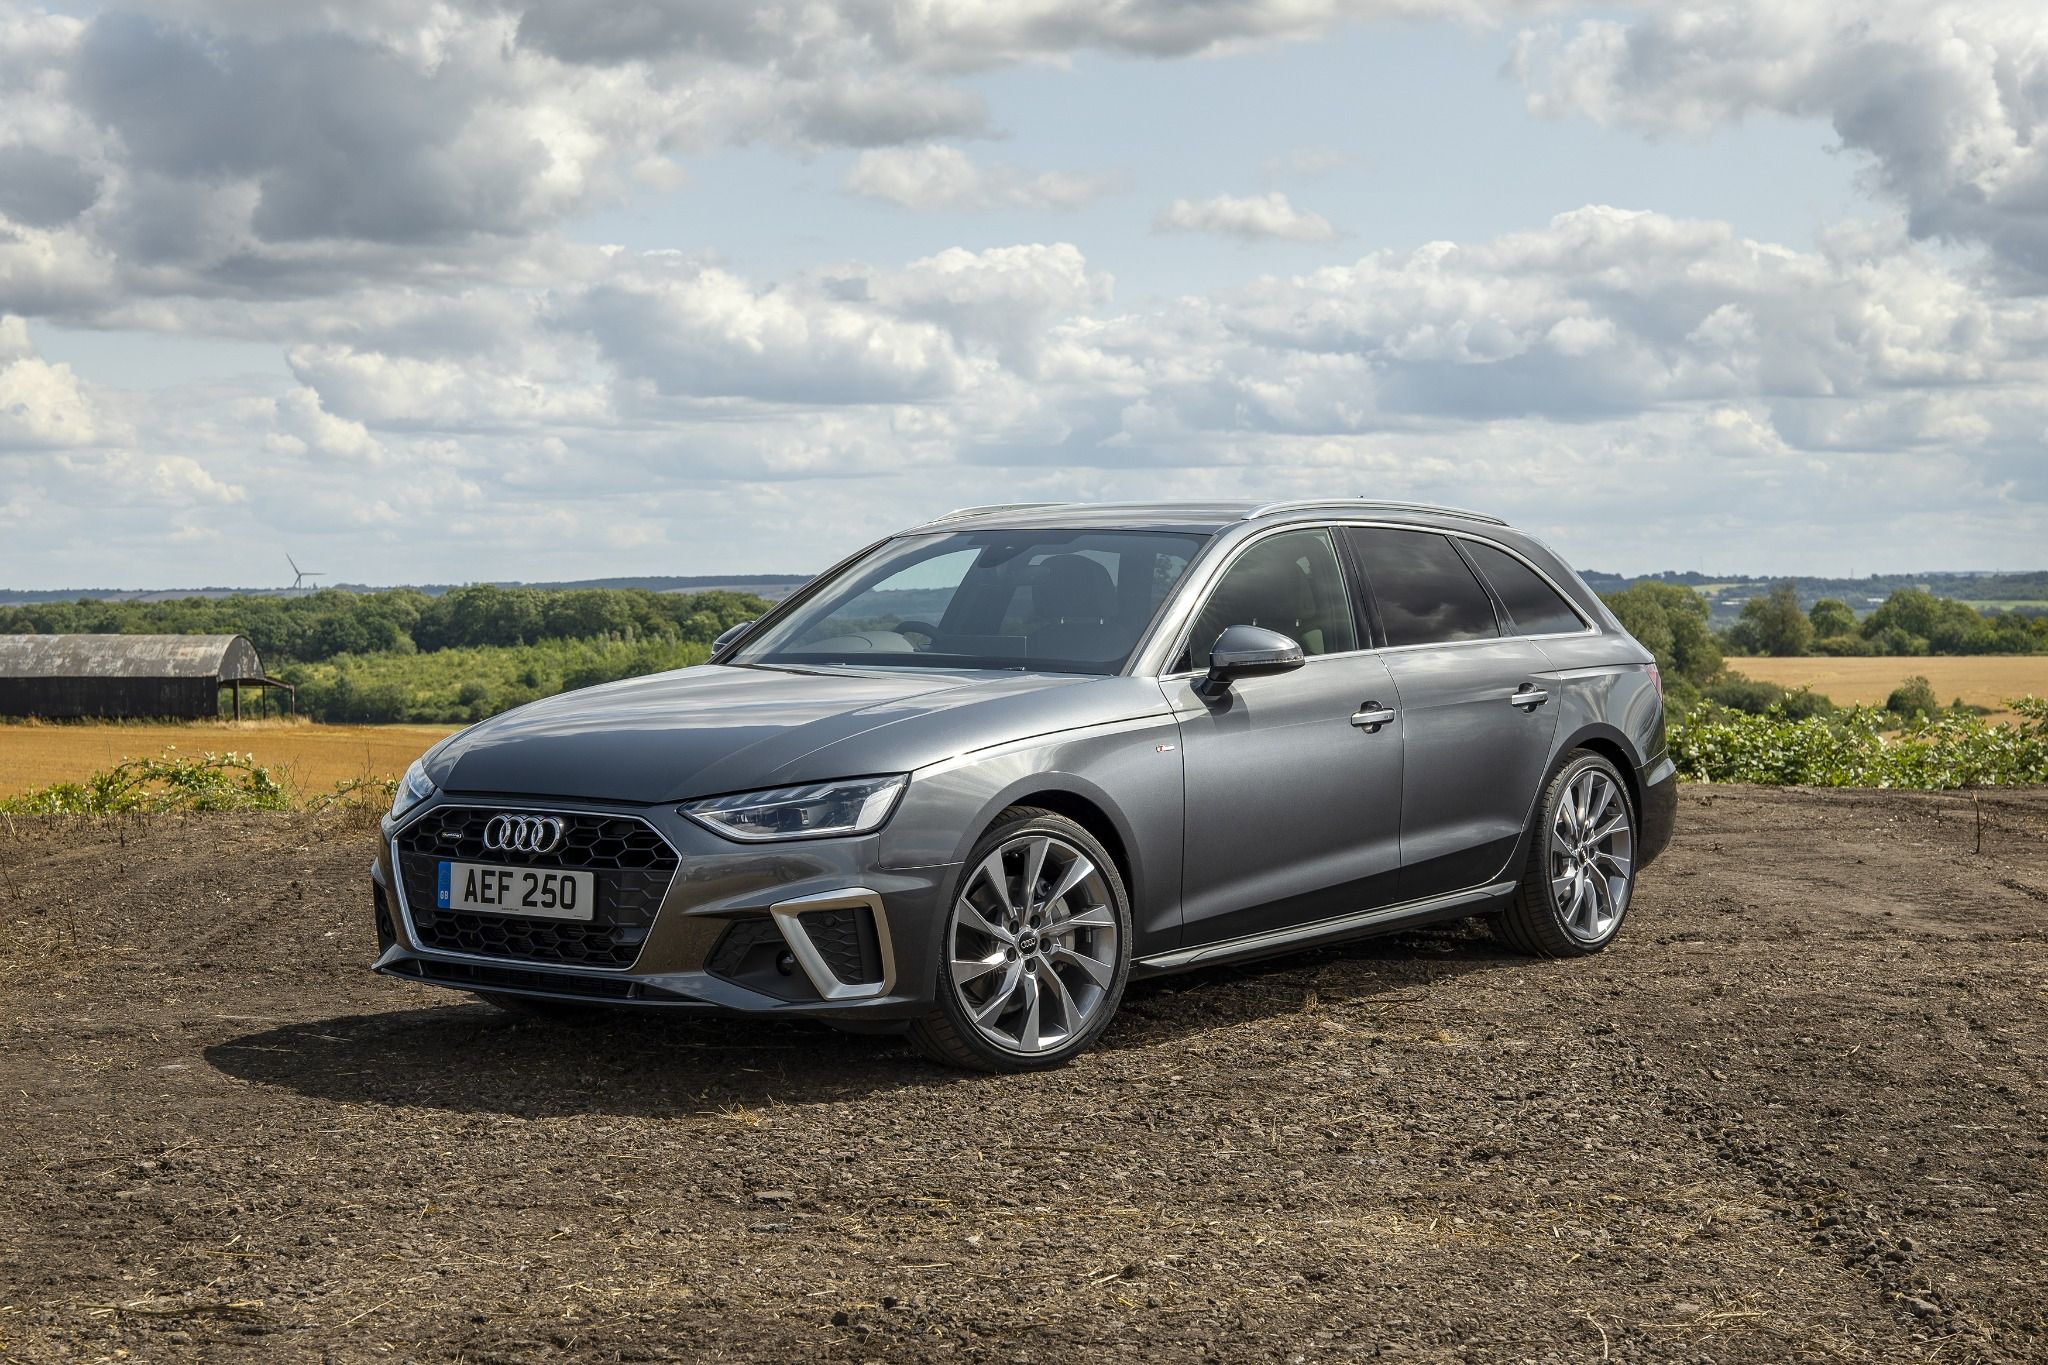 Review: Audi A4 Avant